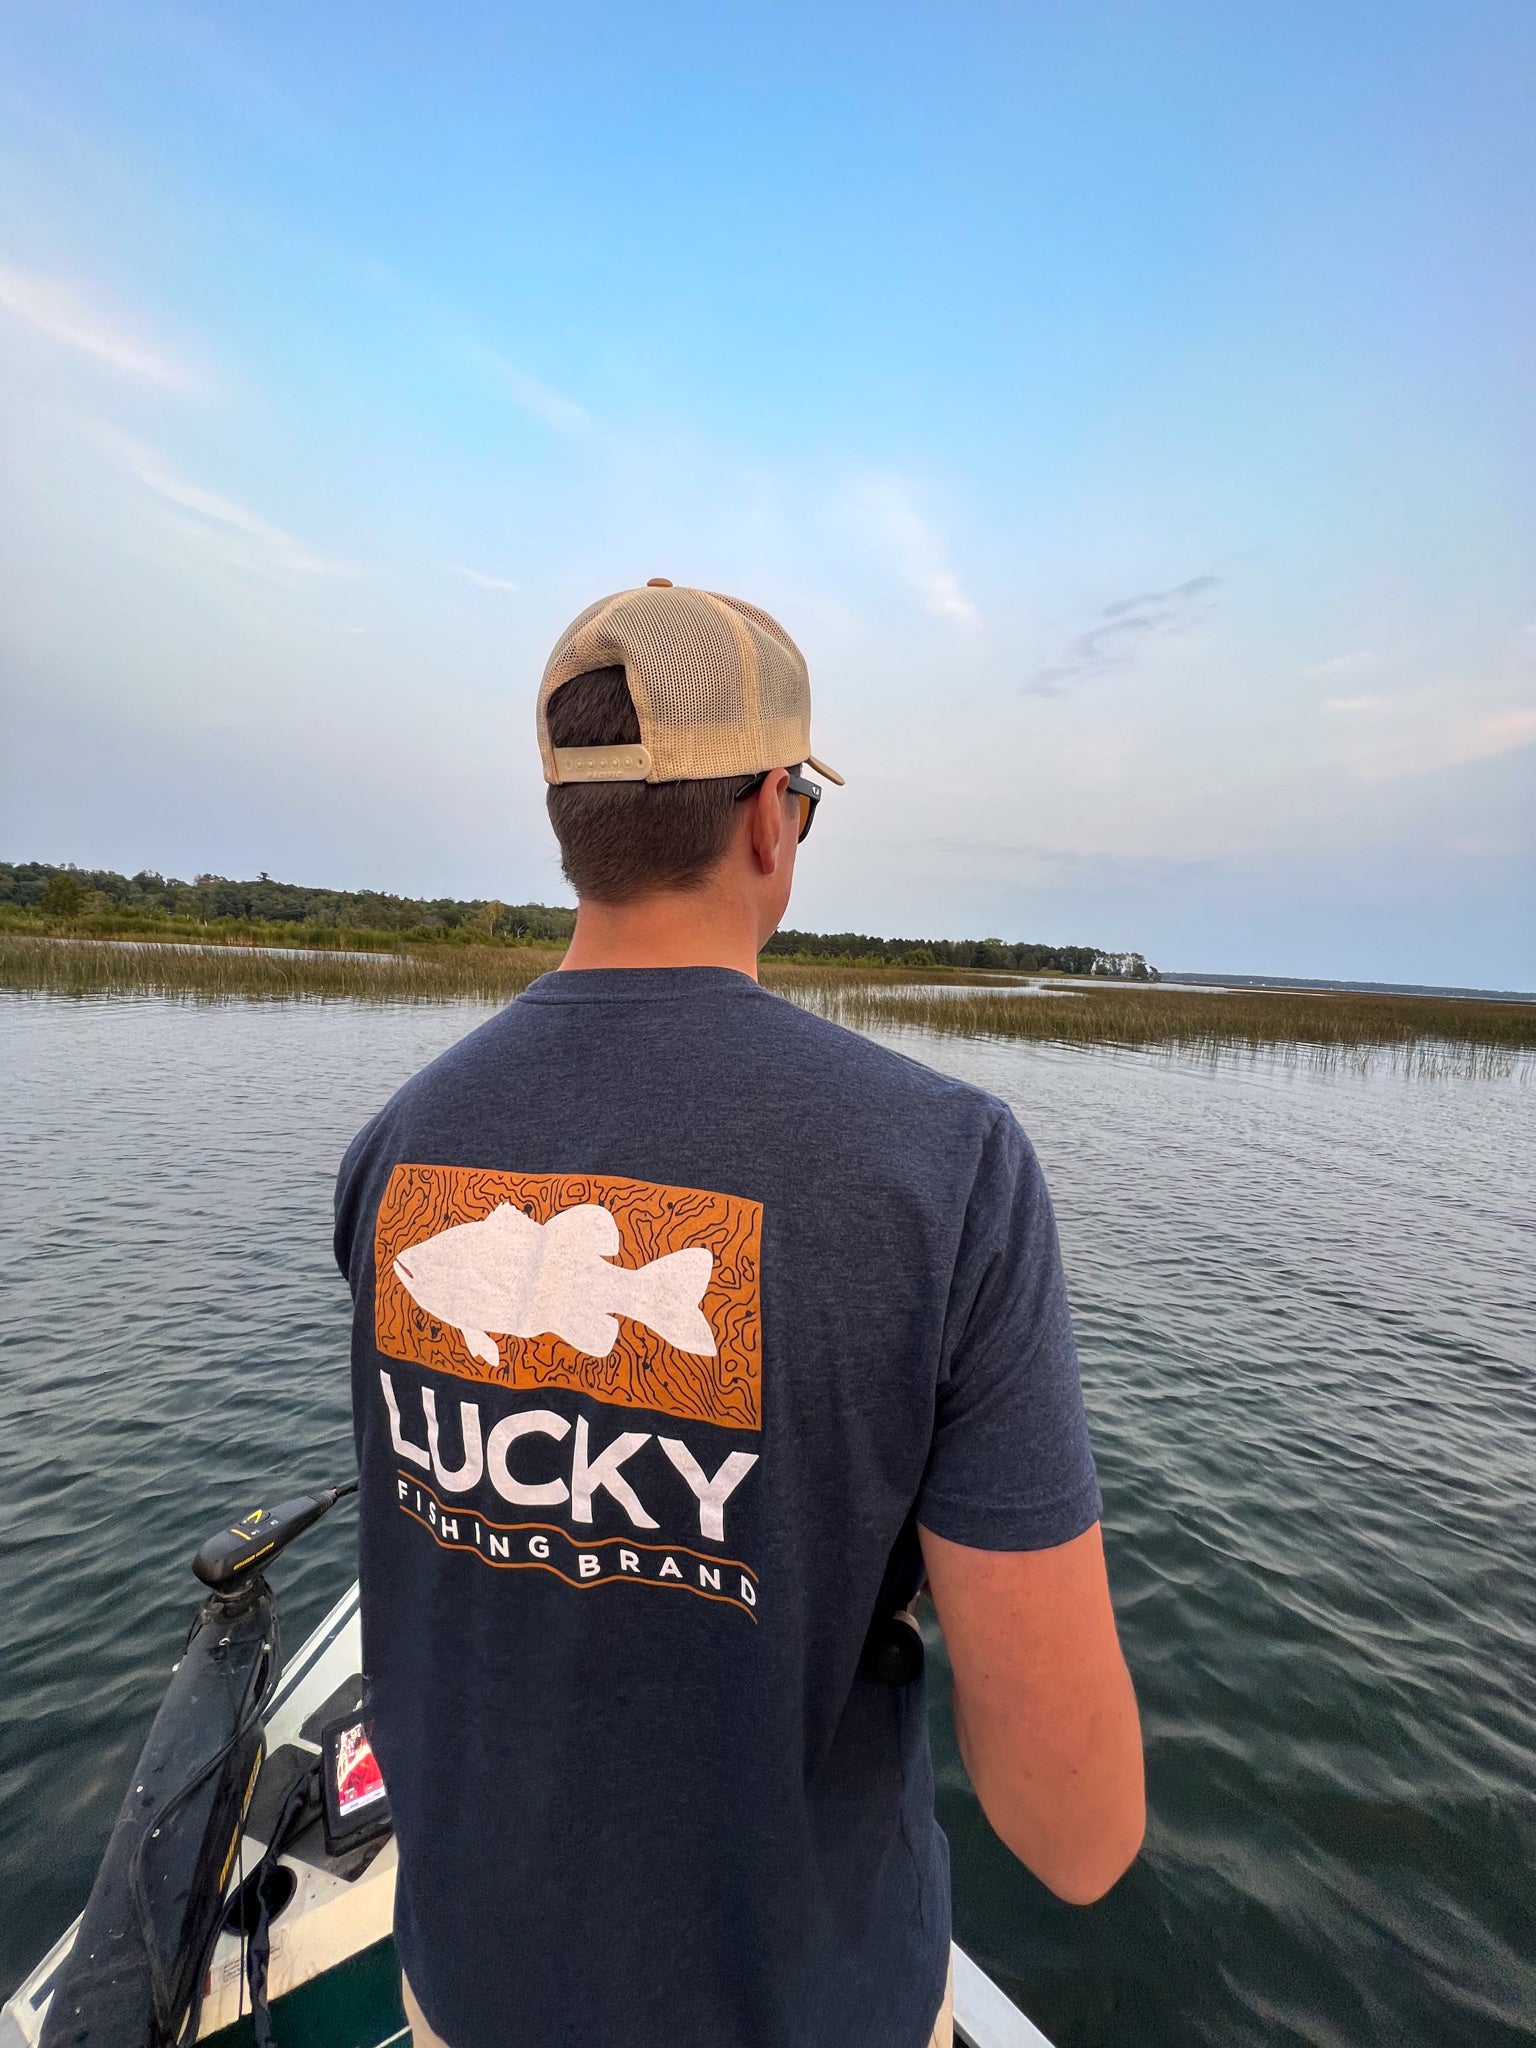 Funny Dad's Lucky Fishing Shirt DO NOT WASH Fishing Dirty Shirt - Lucky  Fishing - Crewneck Sweatshirt